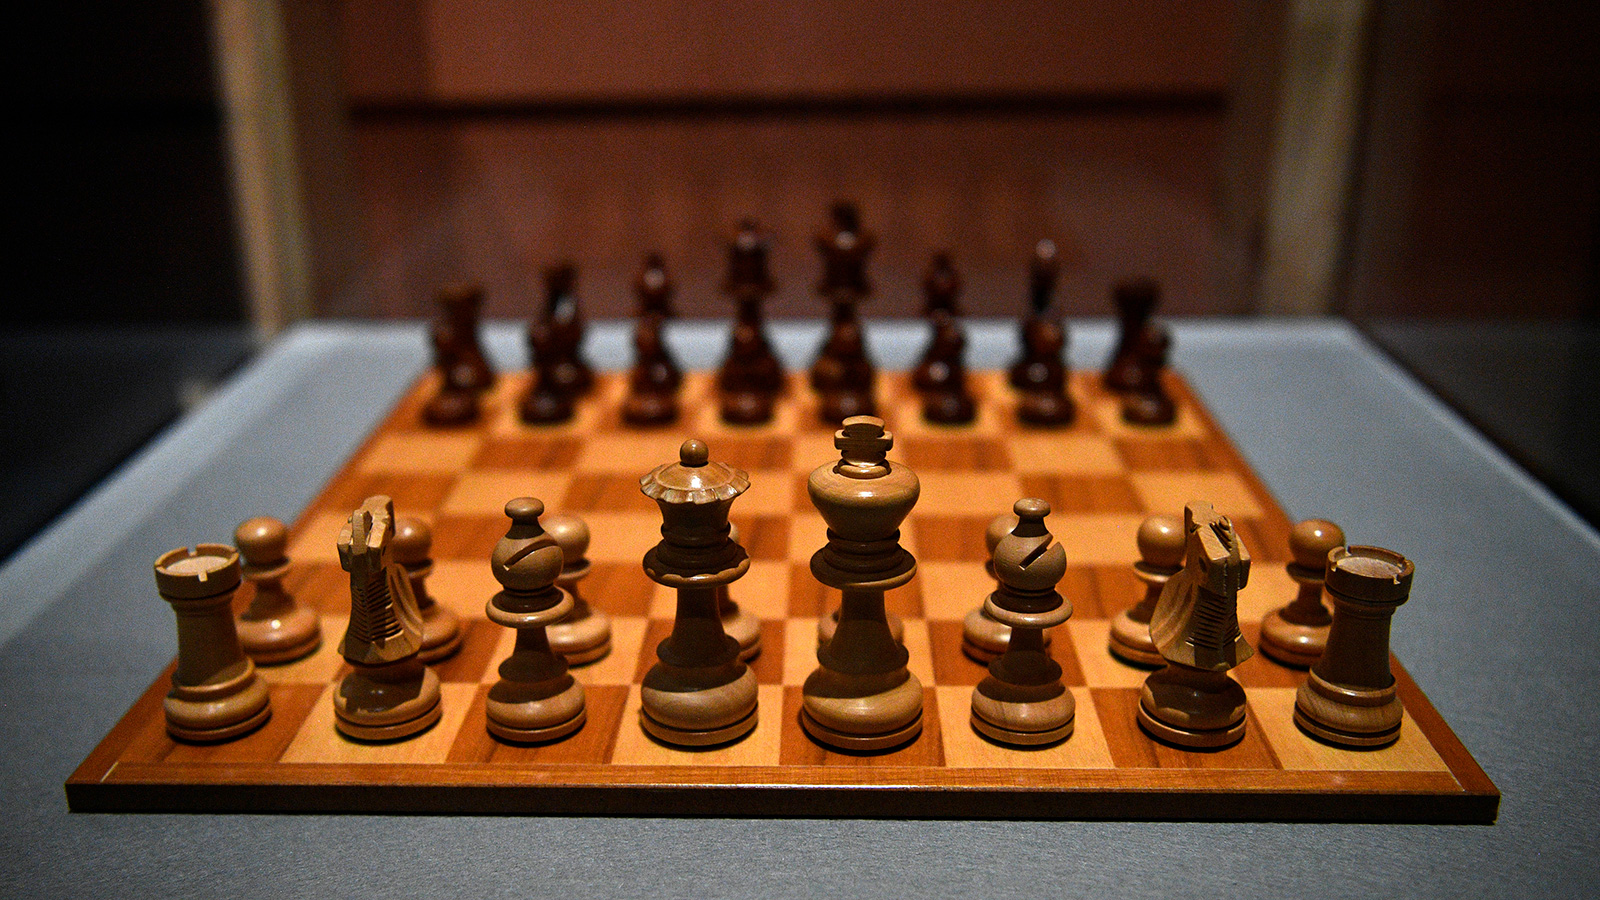 ‪لعبة الشطرنج لها تأثير إيجابي على تنمية القدرات الفكرية خاصة في مجال الرياضيات‬ (الأوروبية)